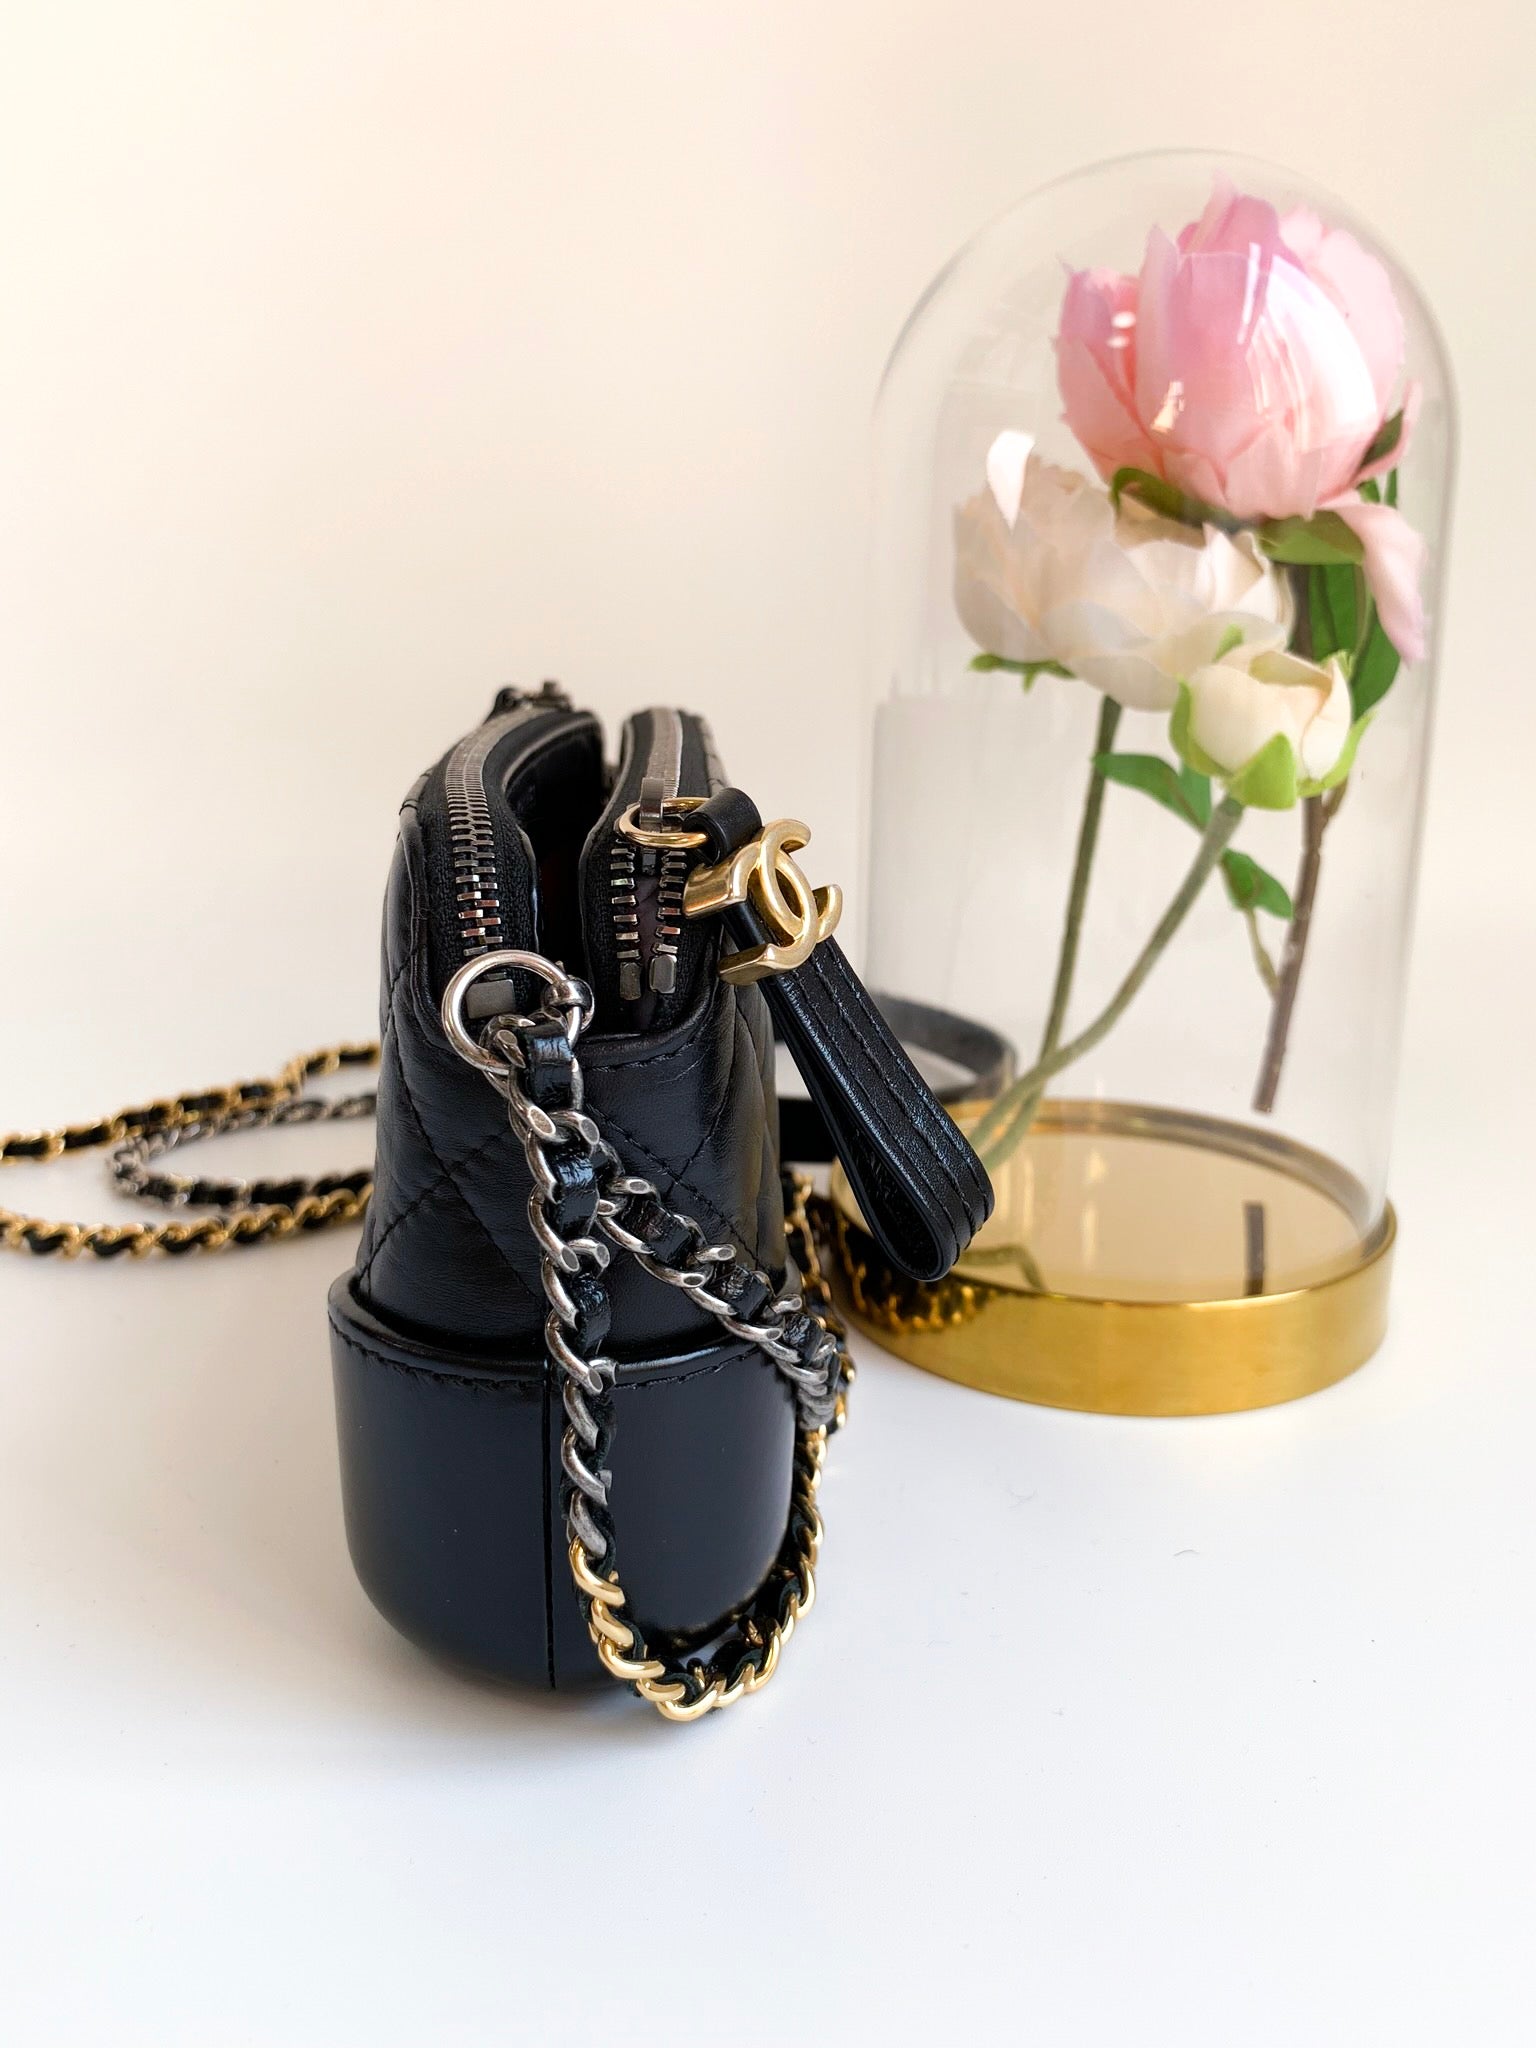 Chanel Gabrielle Clutch On Chain - Designer WishBags